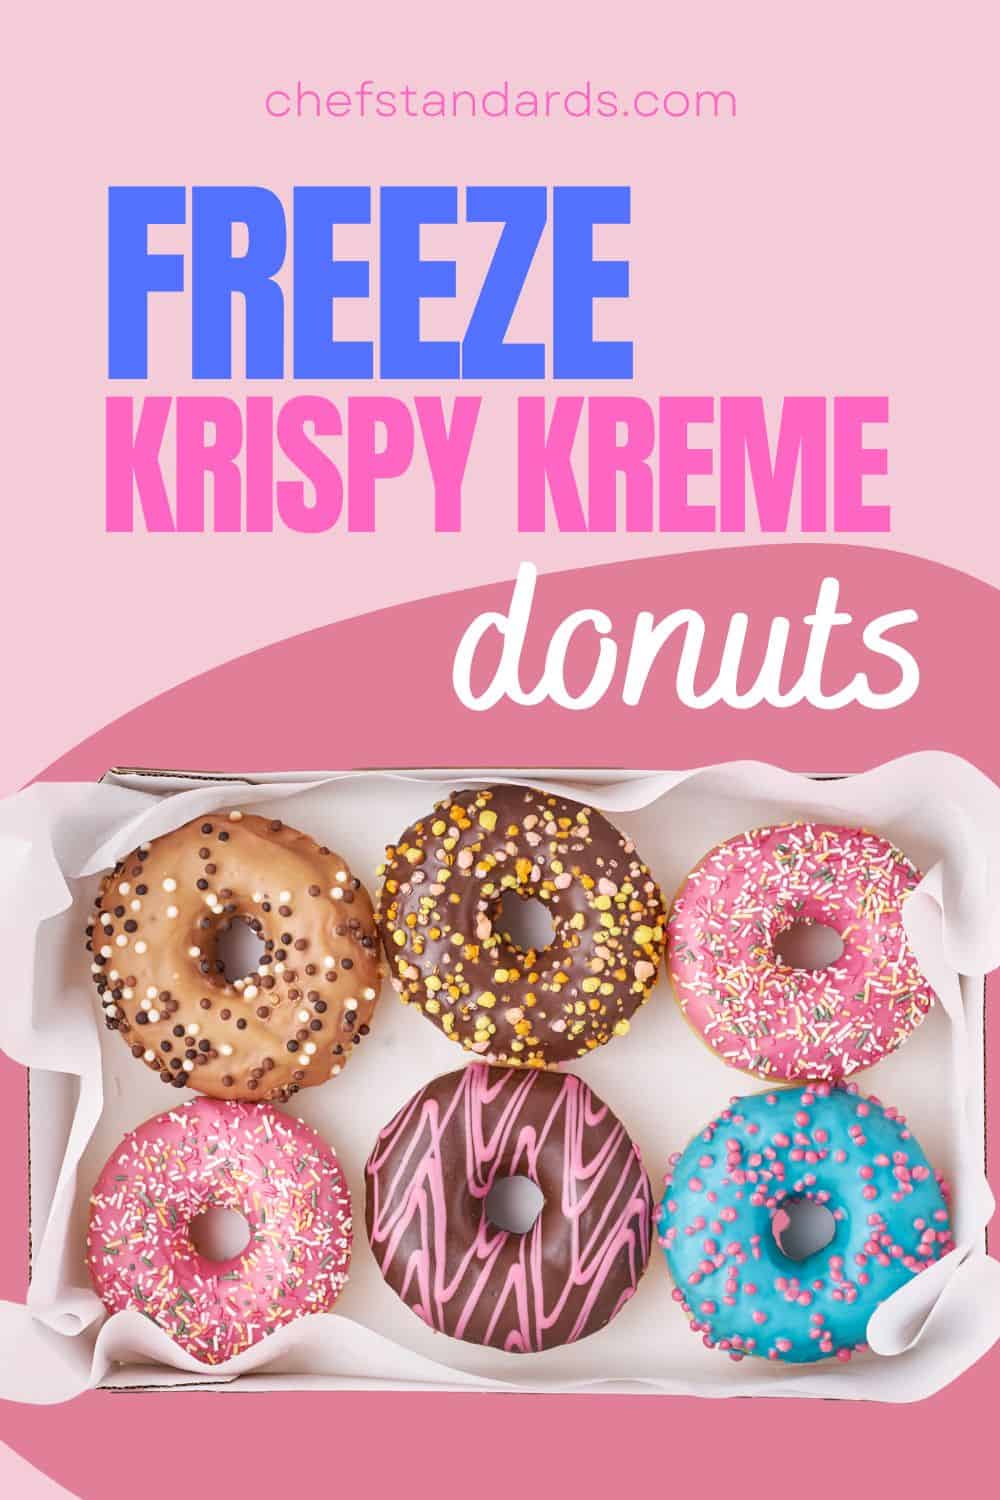 Se Pueden Congelar Los Donuts Krispy Kreme Congelando El Dulce